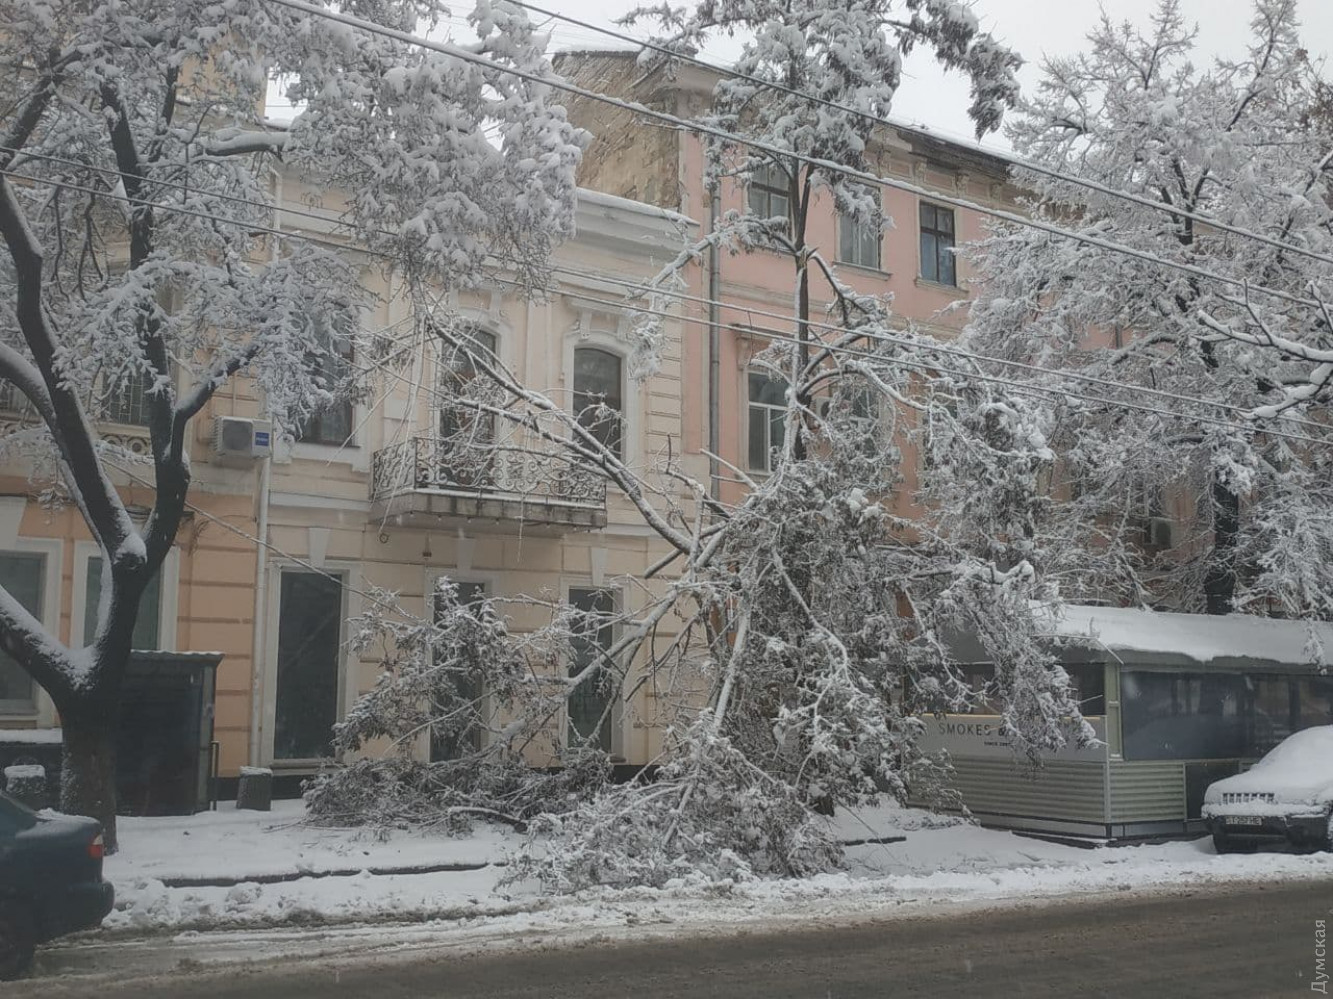 Цілодобові снігопади в Одесі: як місто справляється з негодою (ФОТО, ВІДЕО) - фото 2